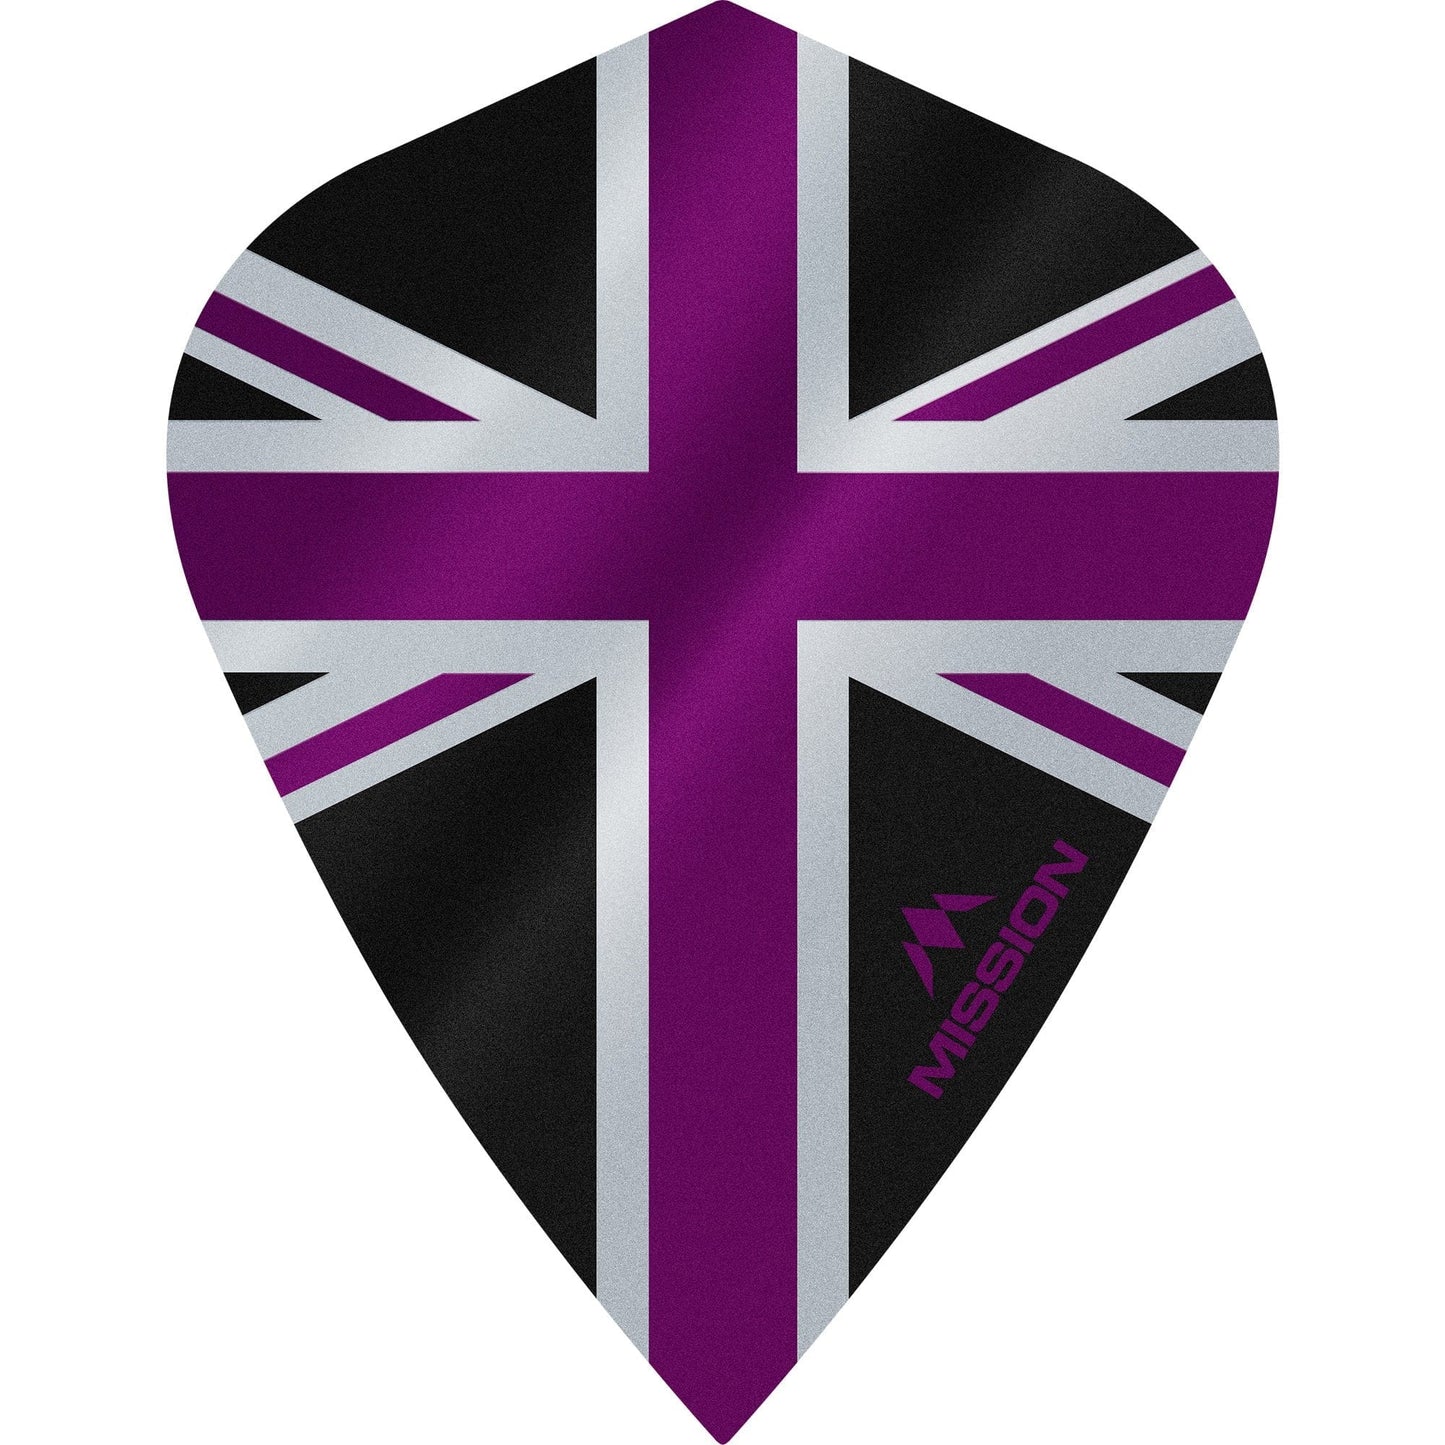 Mission Alliance Union Jack Dart Flights - Kite - Black Black Purple